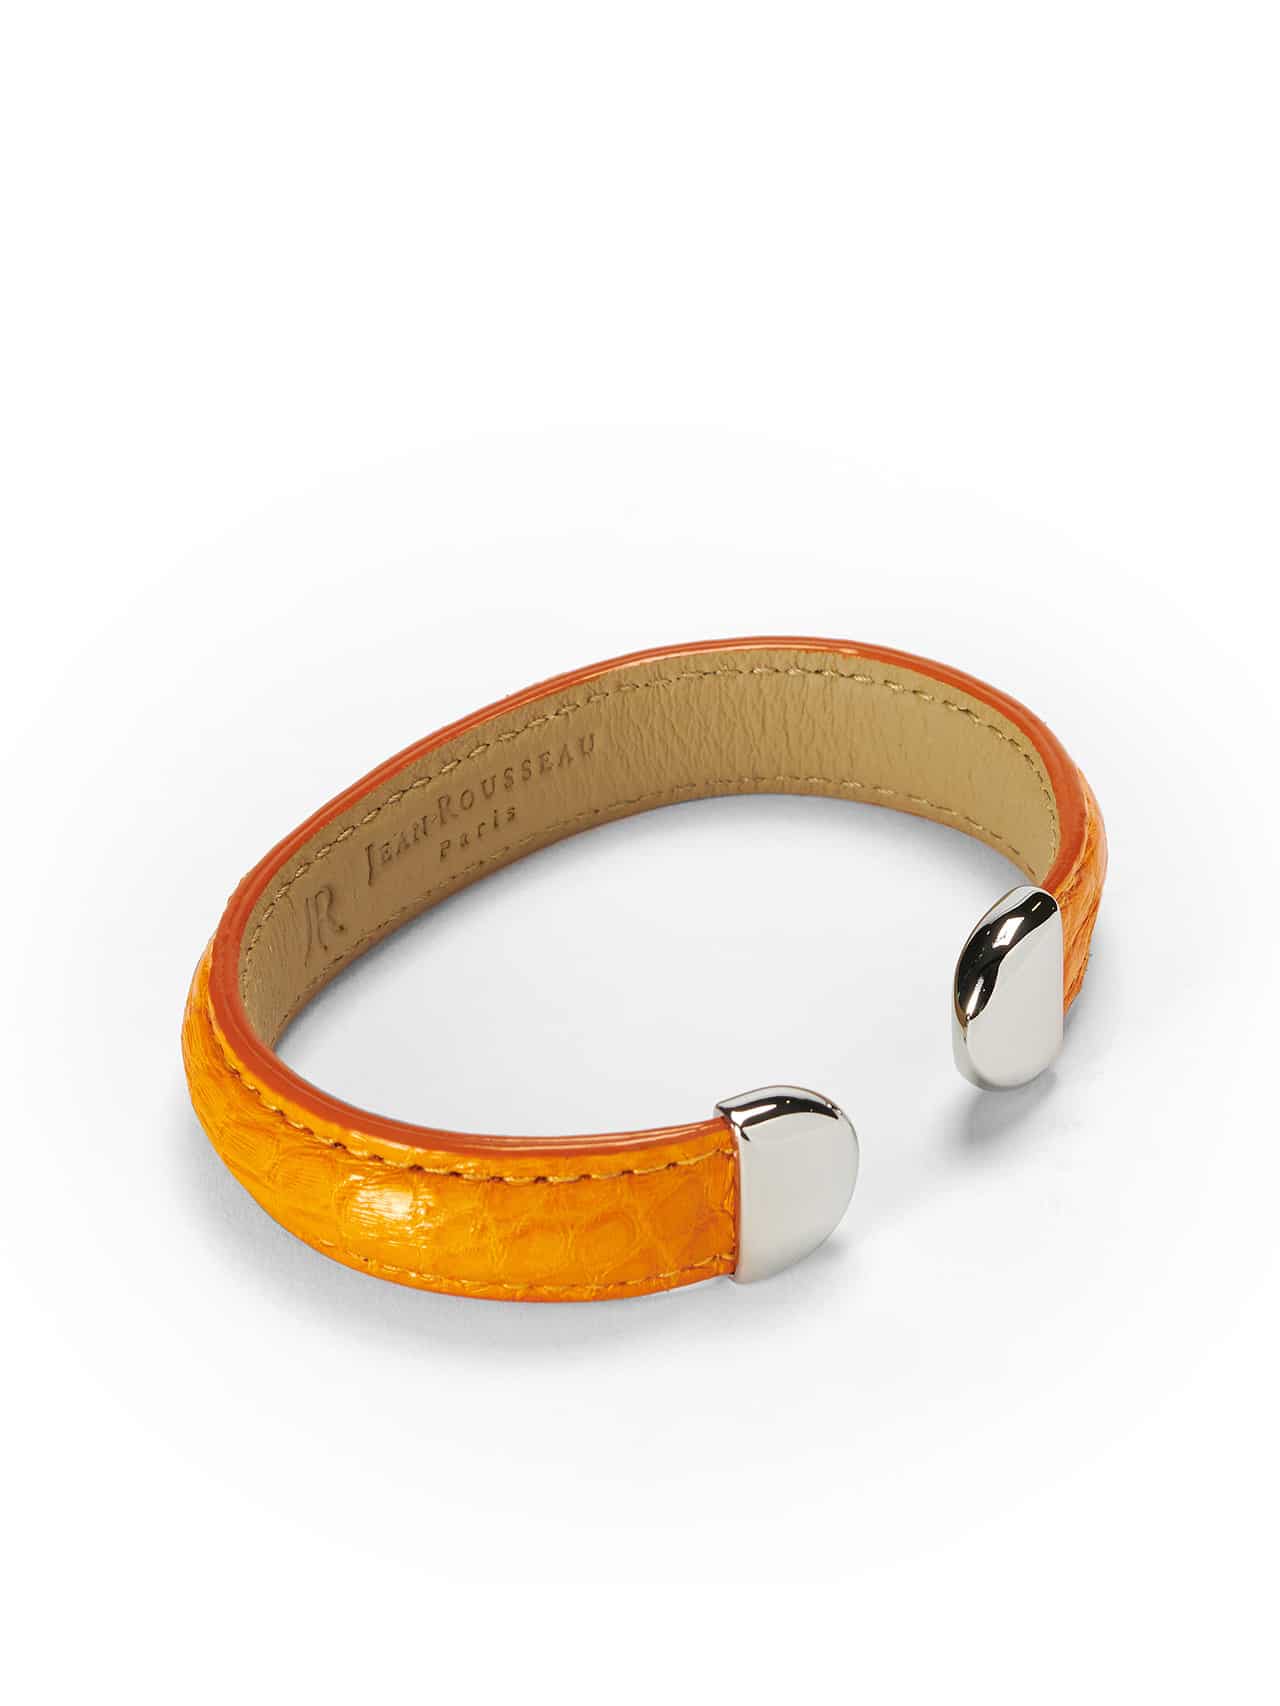 bracelet orange leather jean rousseau